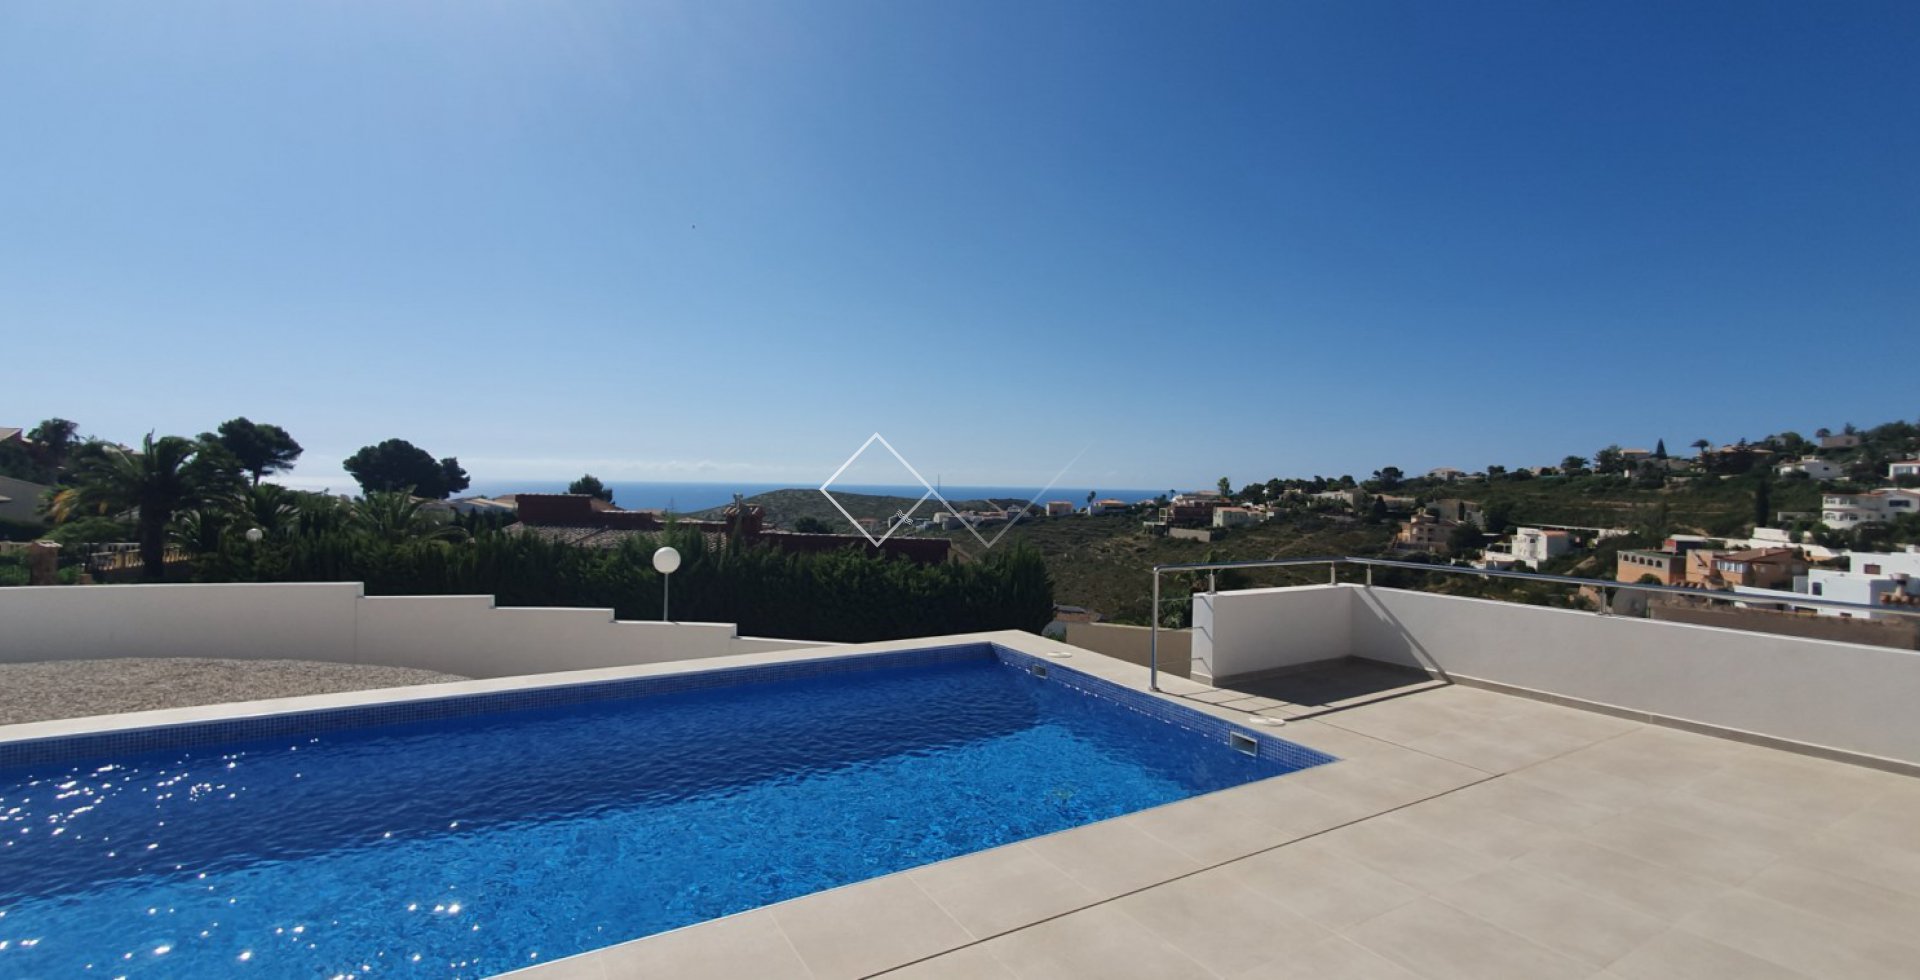 Meerblick - Moderne Luxusvilla, in Strandnähe gelegen und mit Blick auf das Mittelmeer.